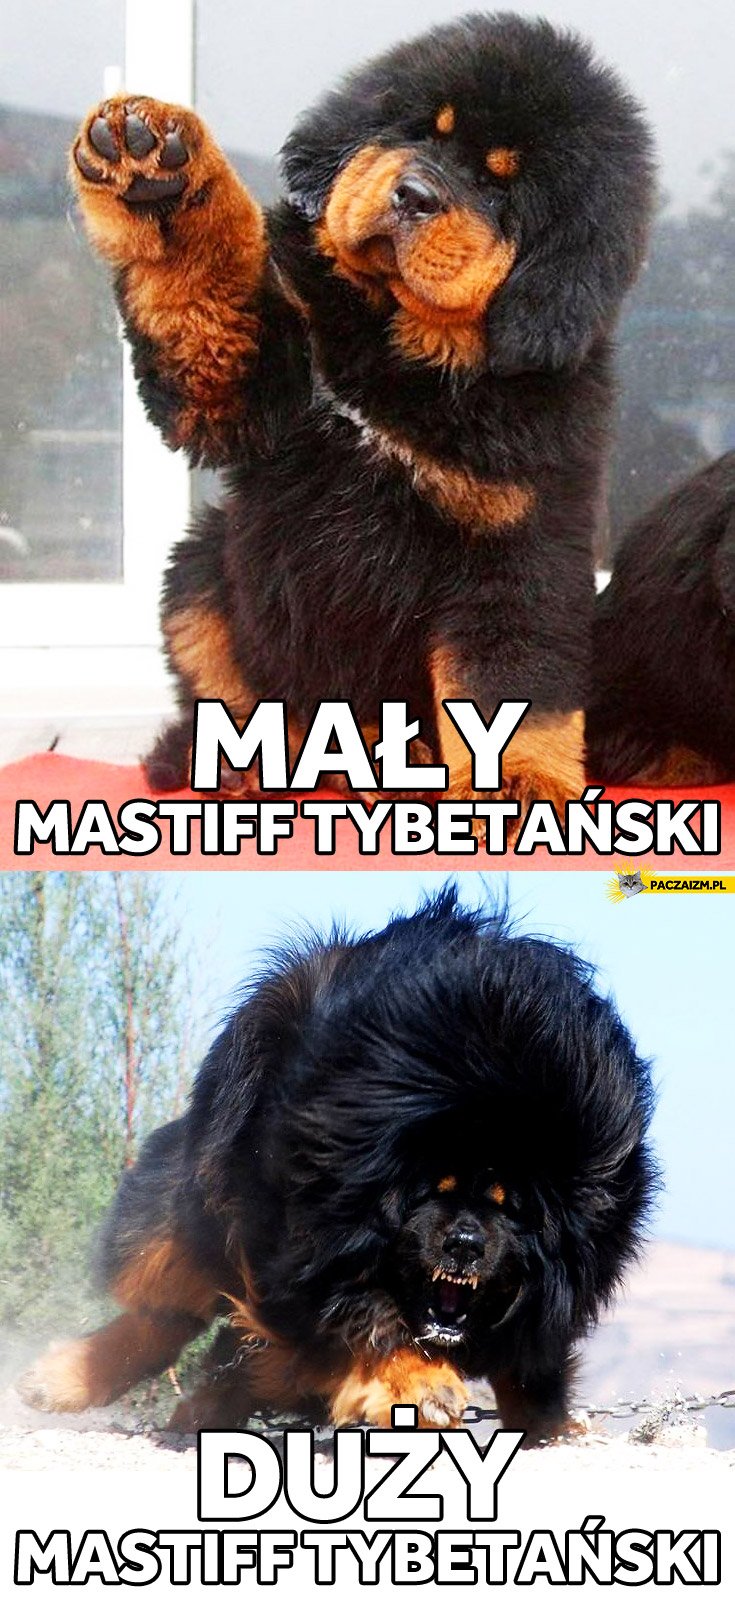 Mały Mastiff Tybetański duży Mastiff Tybetański